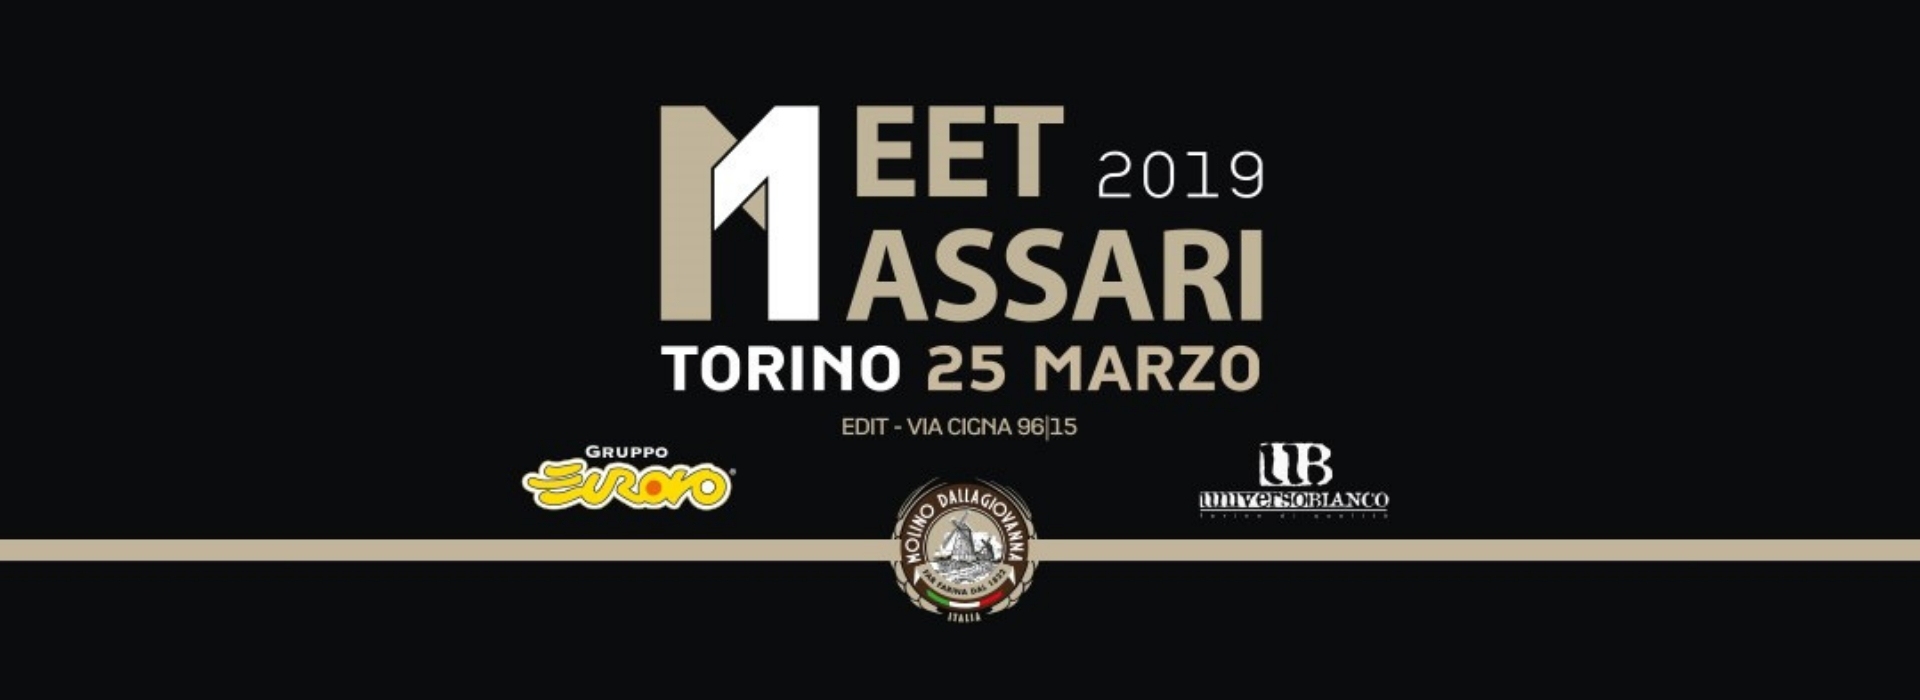 MEET MASSARI TOUR 2019